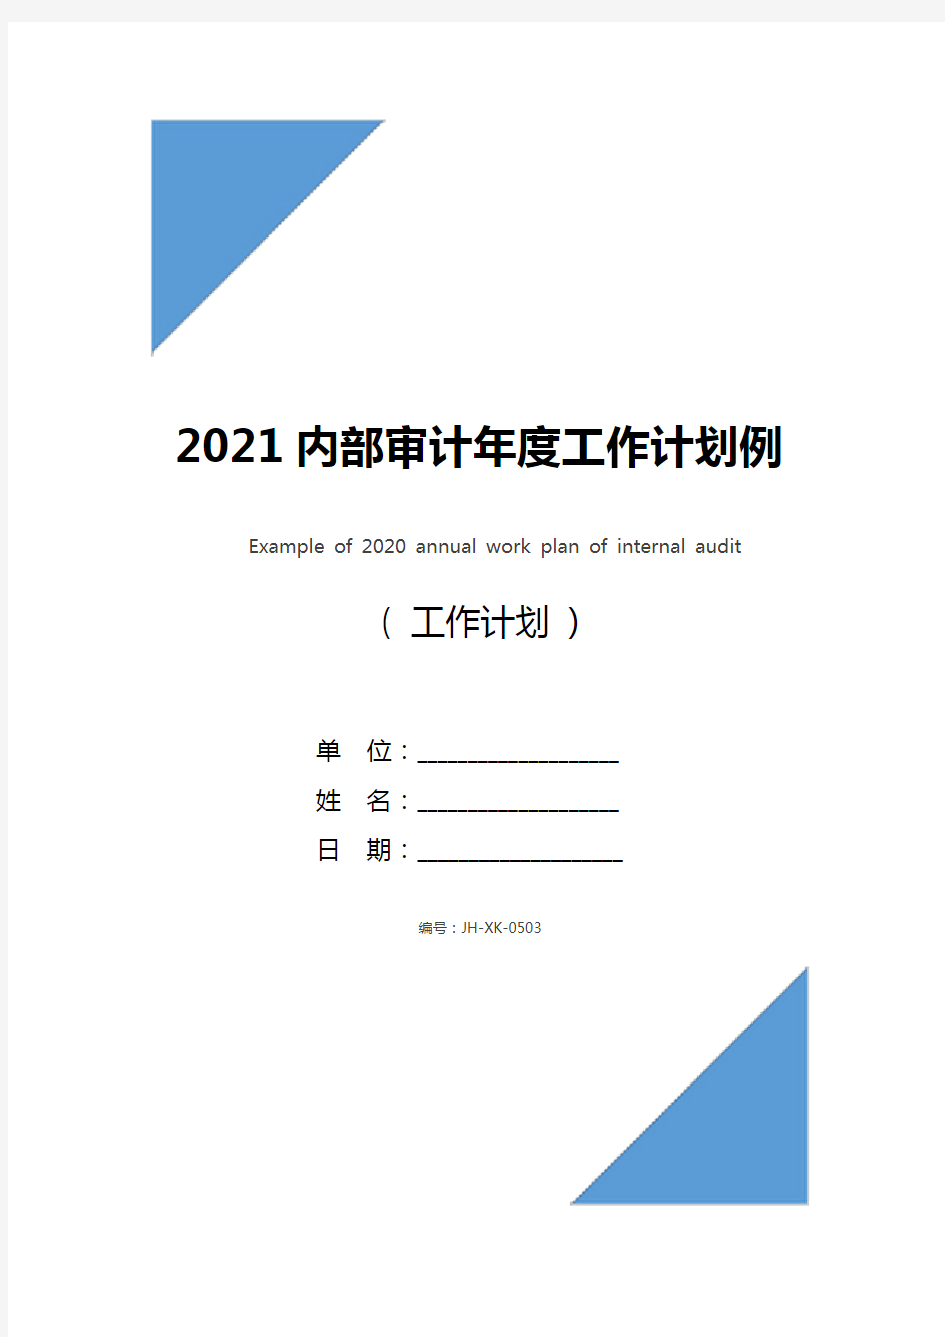 2021内部审计年度工作计划例文(通用版)